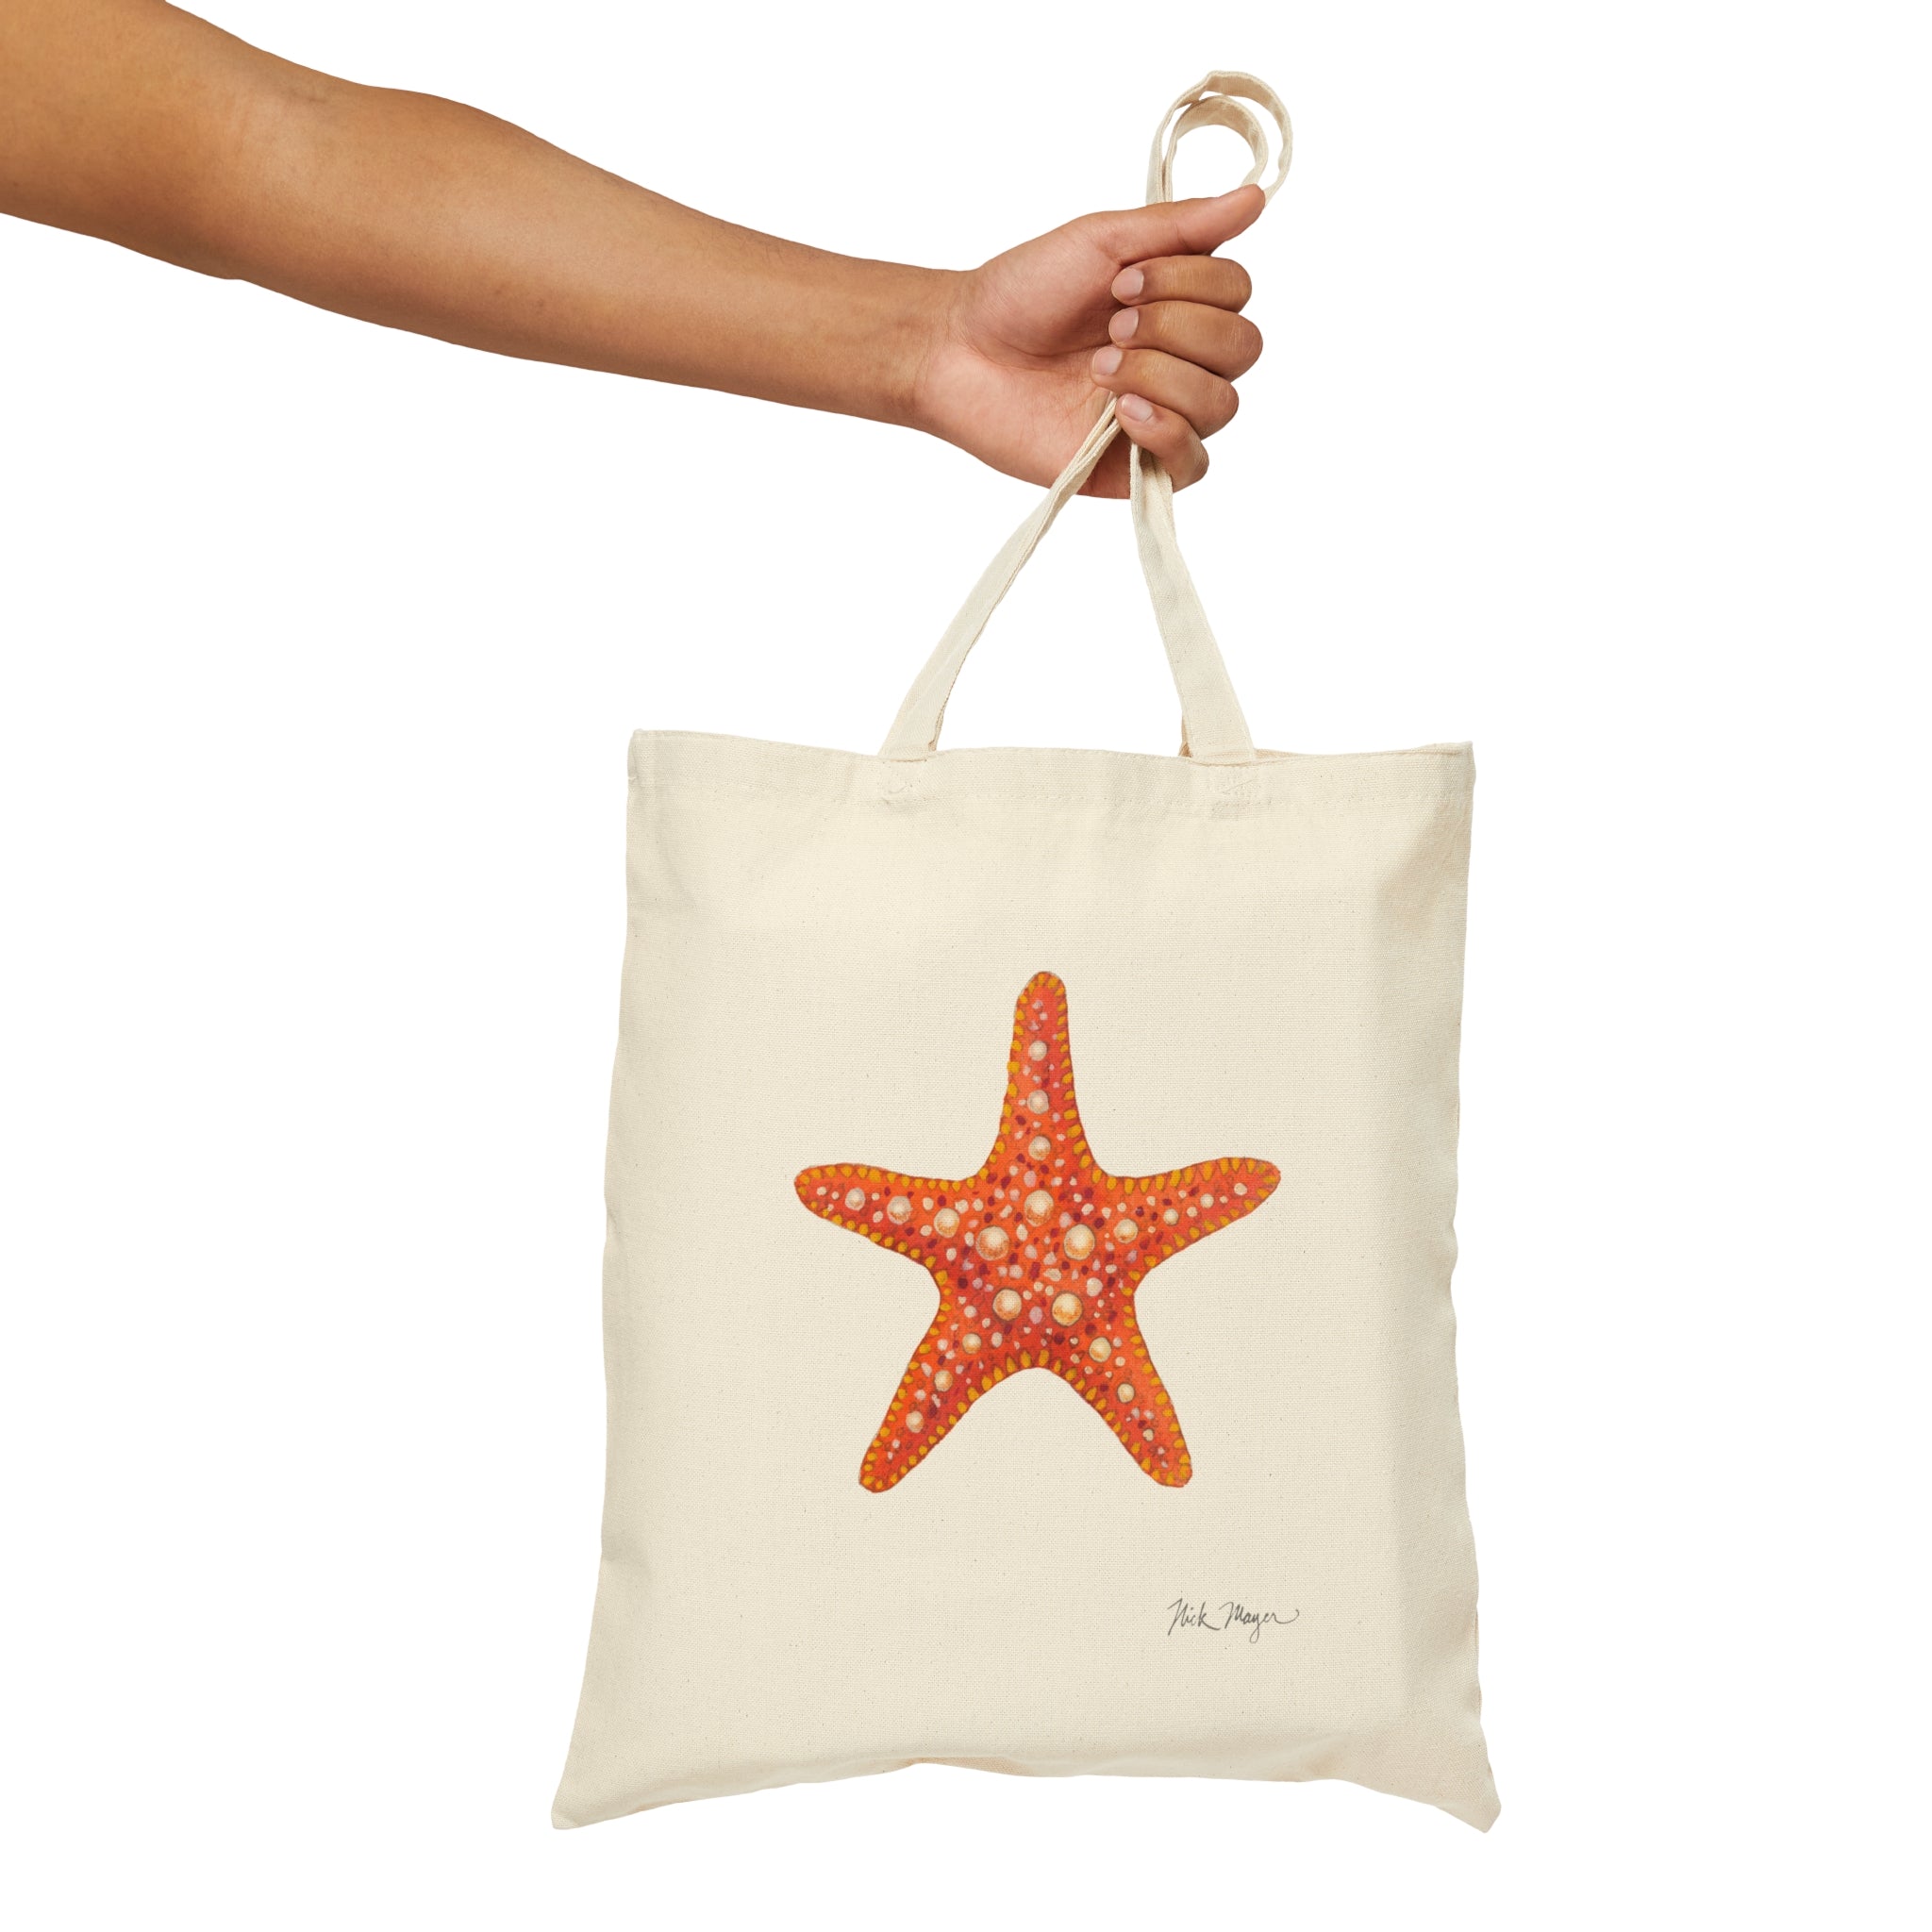 Sea Star Love - Canvas Tote Bag